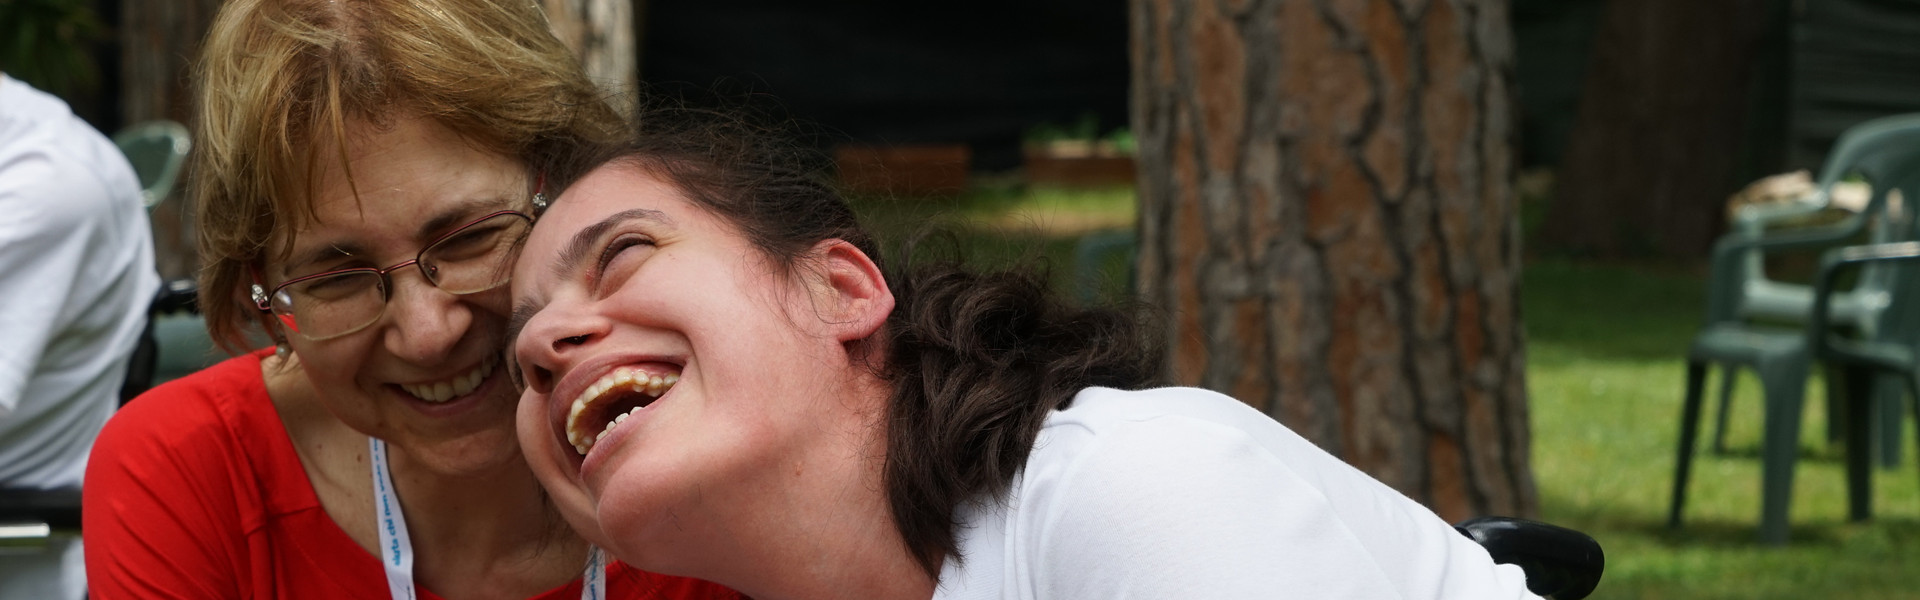 Assemblea delle Famiglie: una volontaria e una giovane utente ridono di gusto insieme guardando o ascoltando qualcosa con uno smartphone